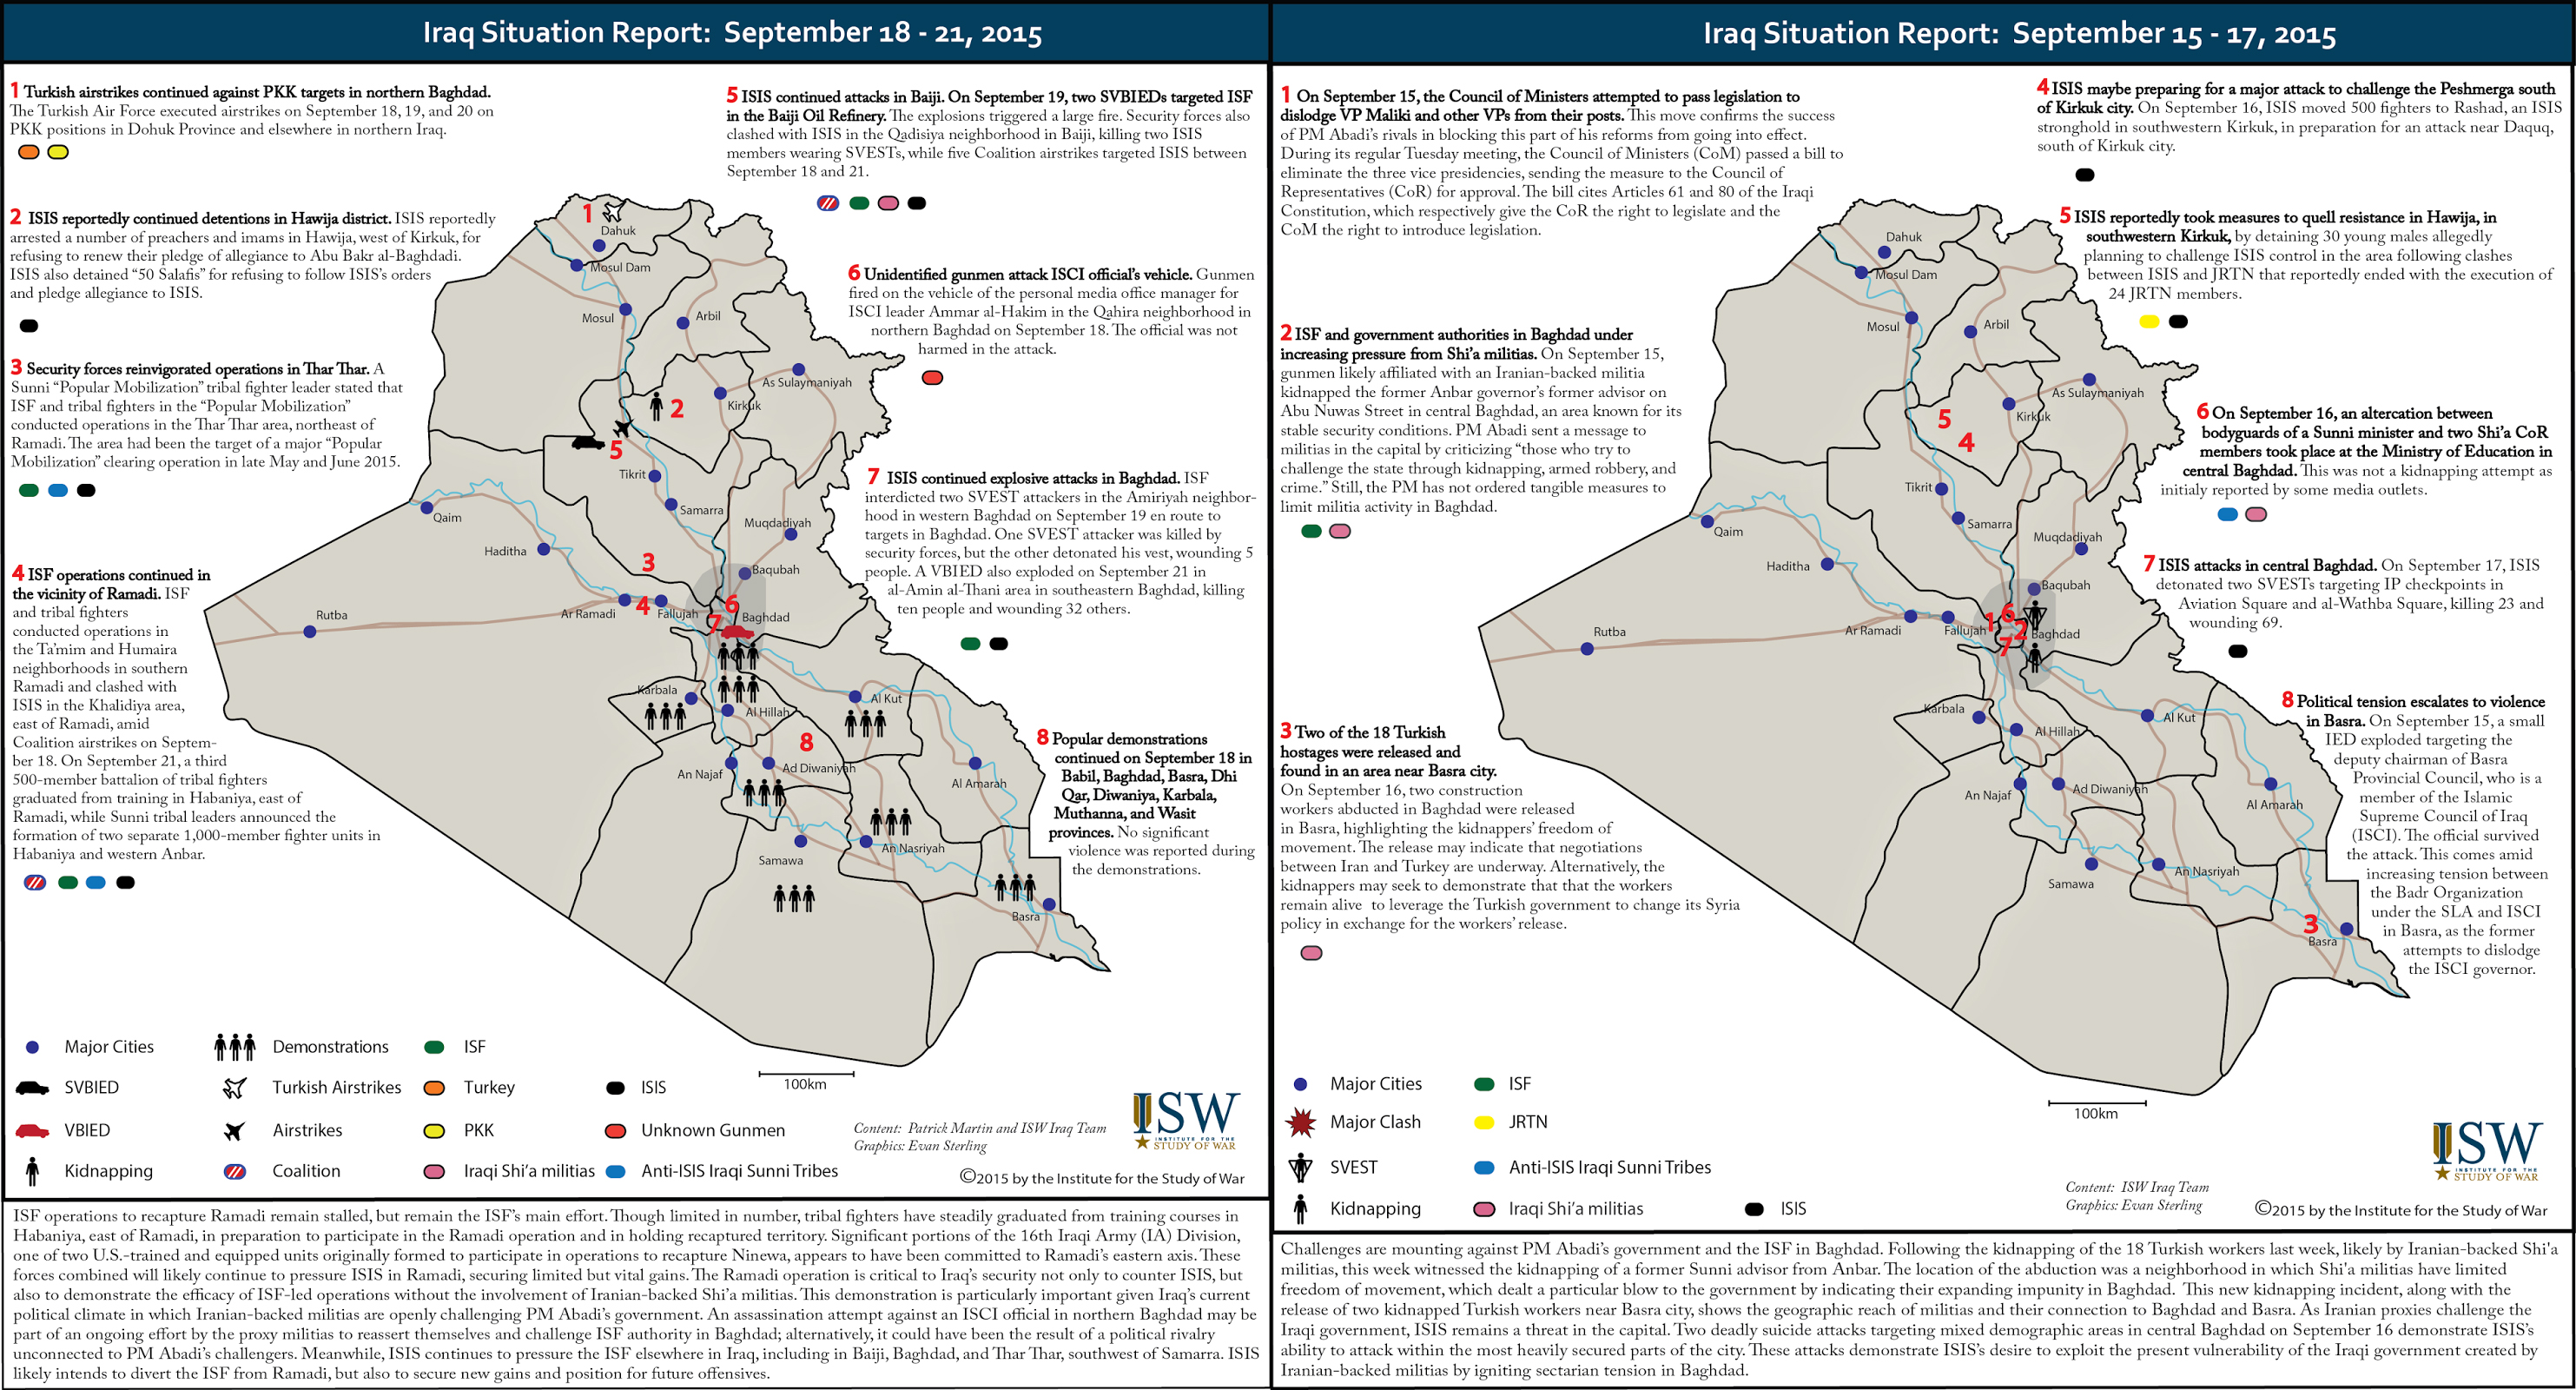 تقرير يكشف الوضع في العراق خلال الفترة من 15-21 ايلول/2015